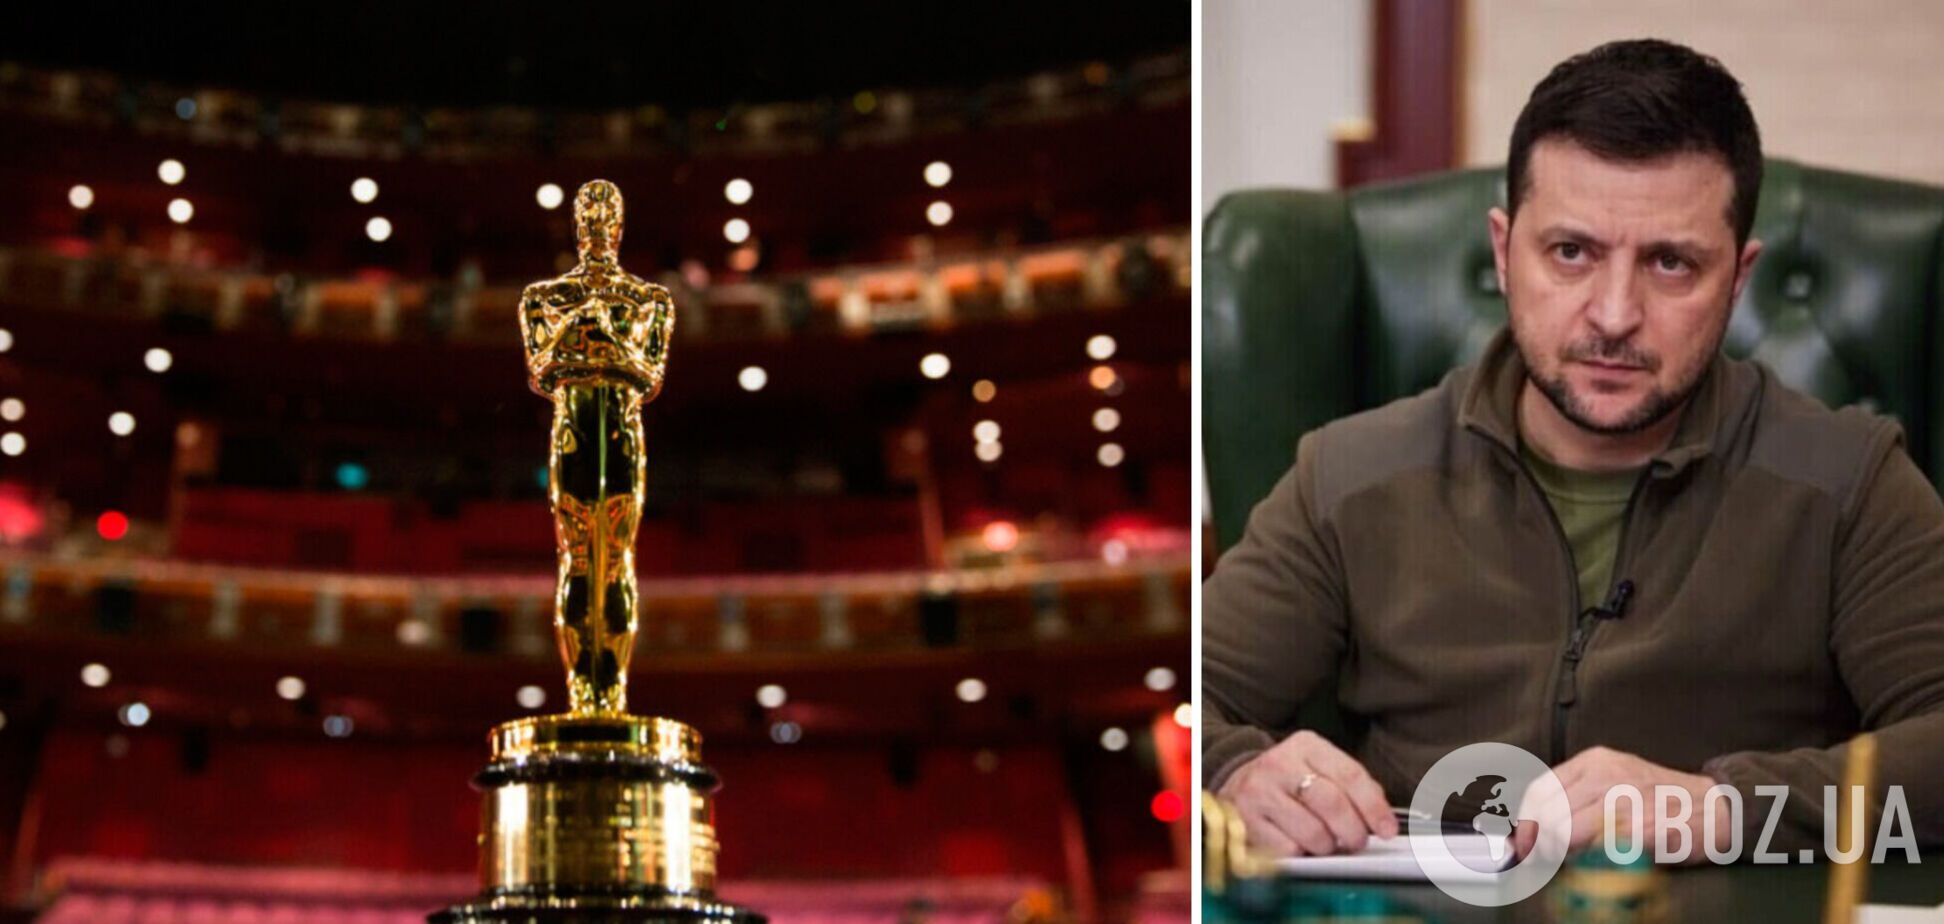 Организаторы кинопремии 'Оскар' снова отказали Зеленскому в выступлении во время церемонии награждения – Variety